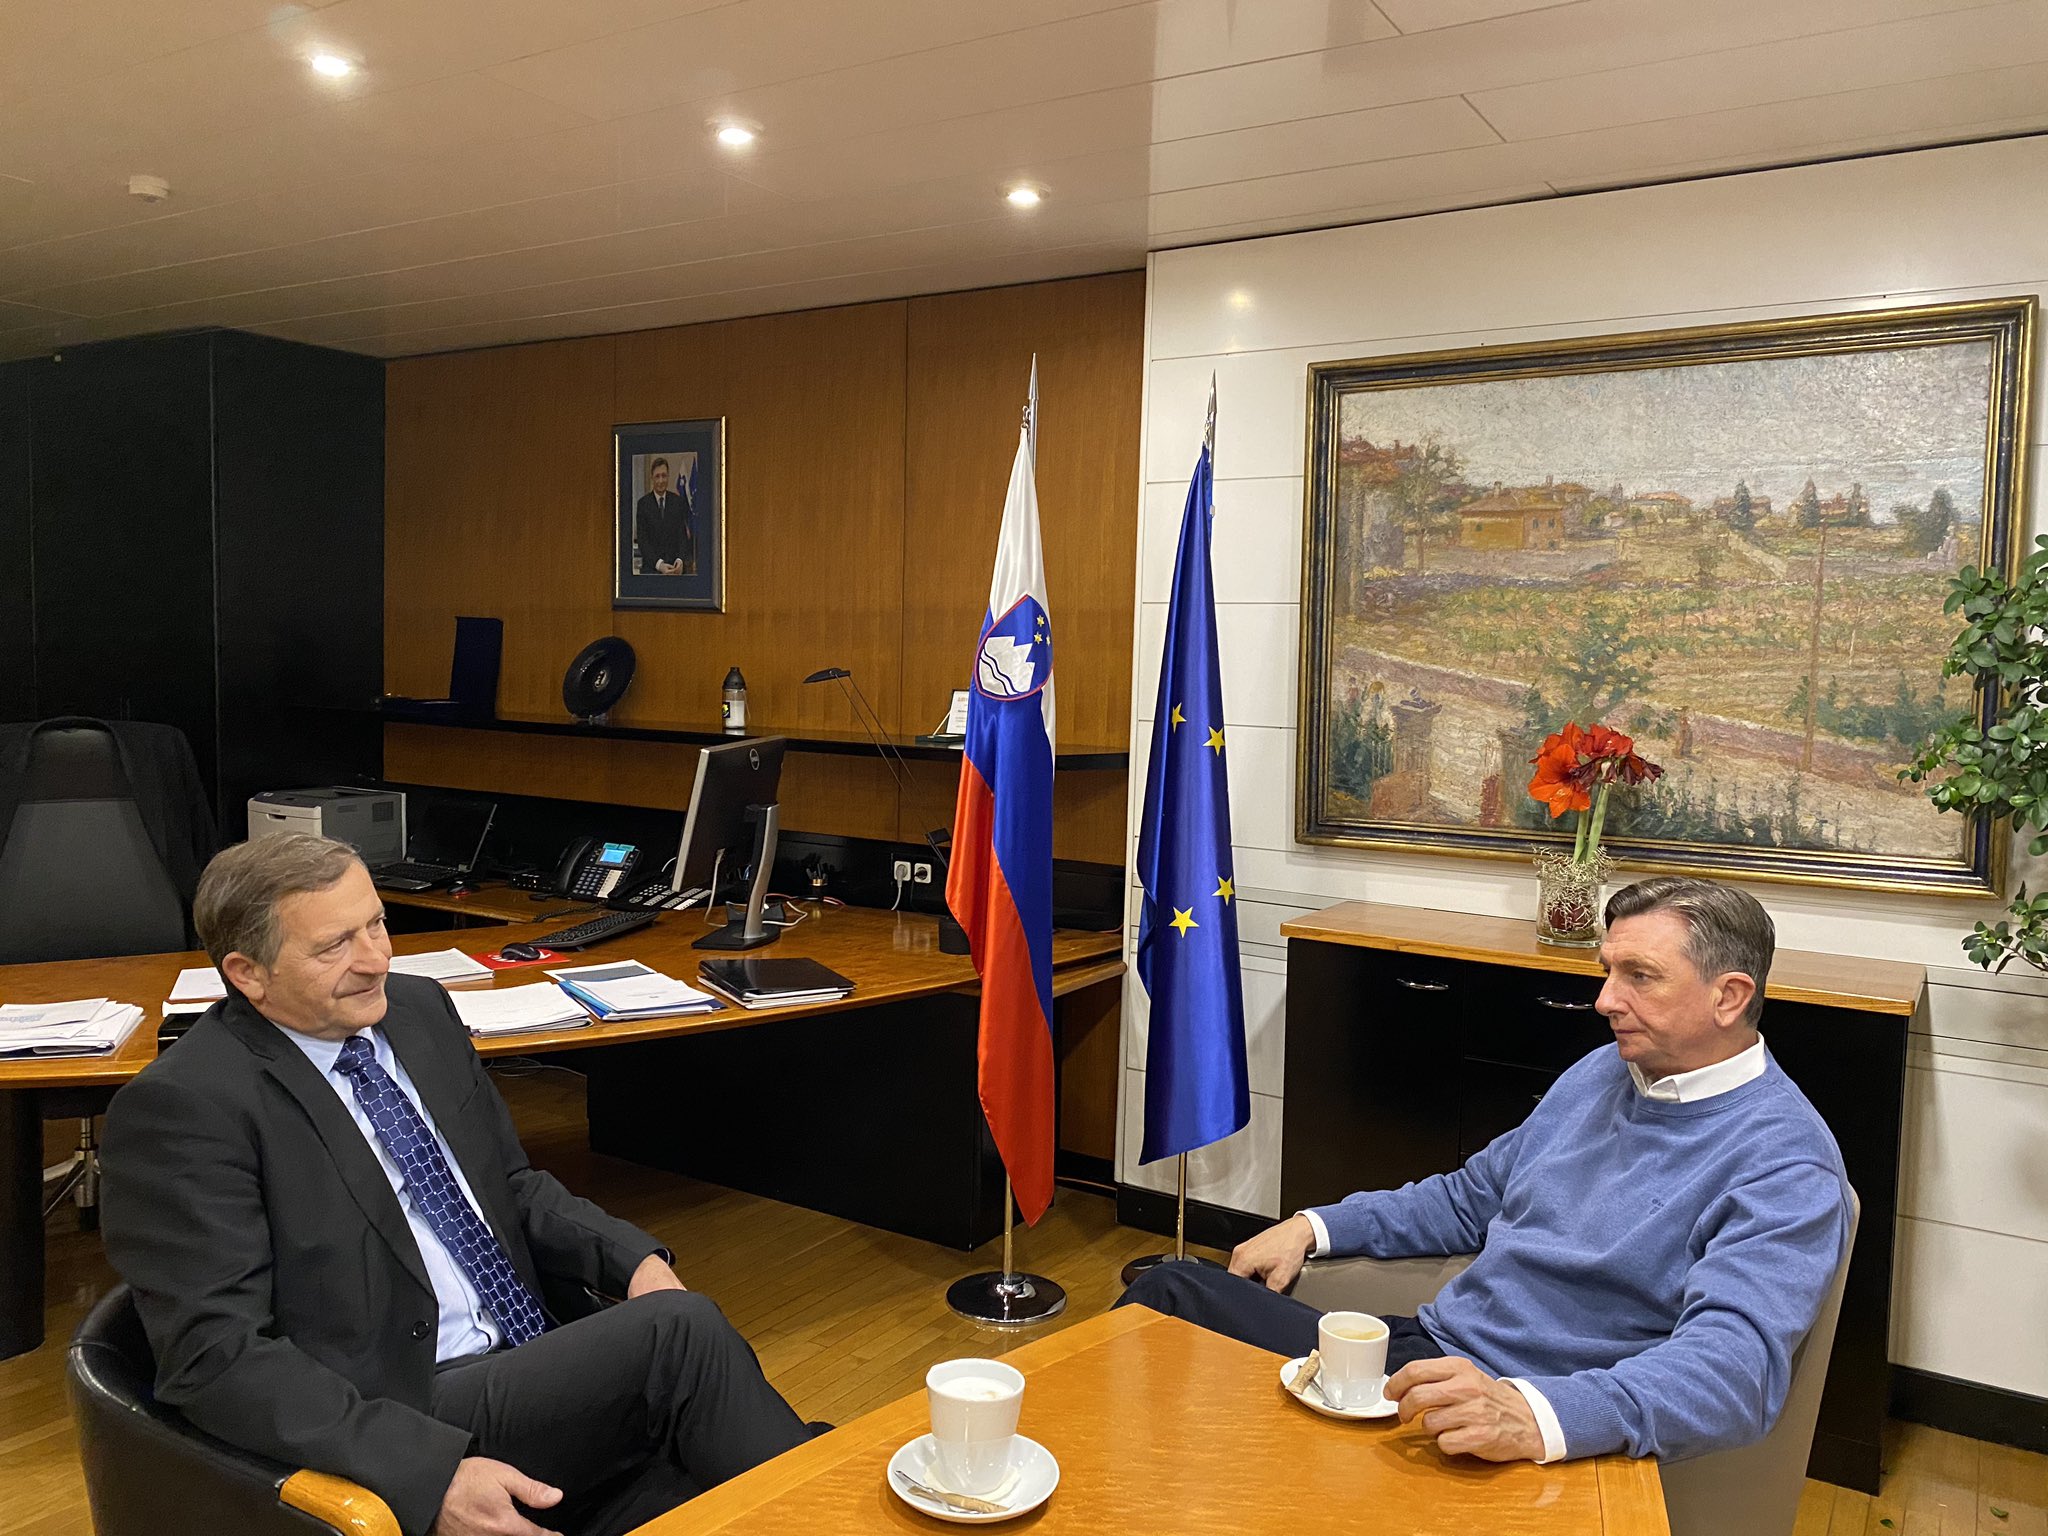 (VIDEO) Janša o zasedanju Pahorja in Erjavca: “Si predstavljate ta dva v podobni pisarni leta 1990 in 1992?”